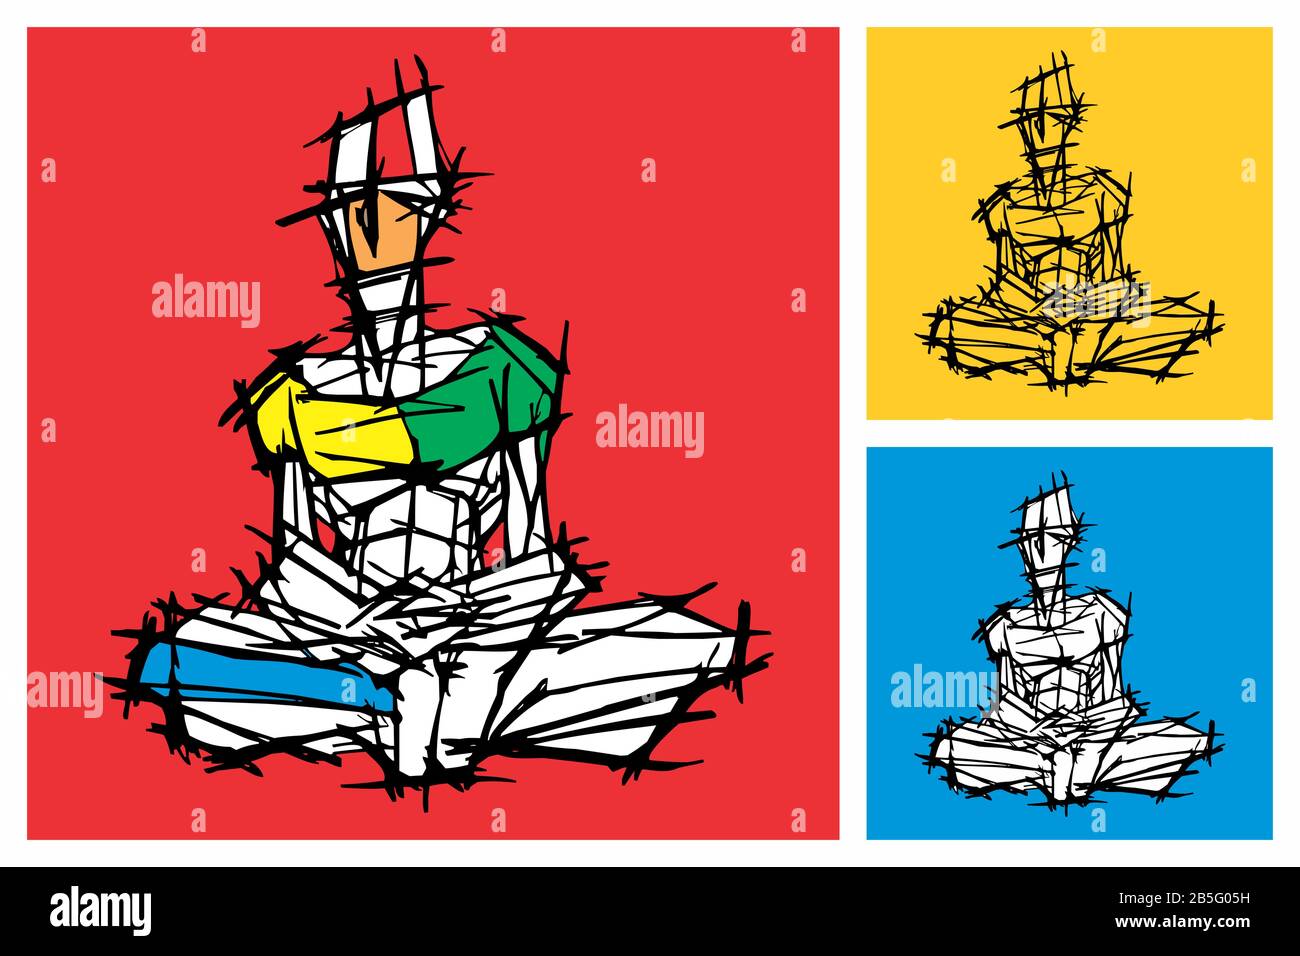 Disegno Dell'Inchiostro (Lavoro Del Portello) Della Persona Di Posa Di Meditazione (Yoga, Pensare) In Uno Stile Unico Textured. Illustrazione Manuale Delle Linee Trasversali Artistiche Ruotata Su Vec Illustrazione Vettoriale